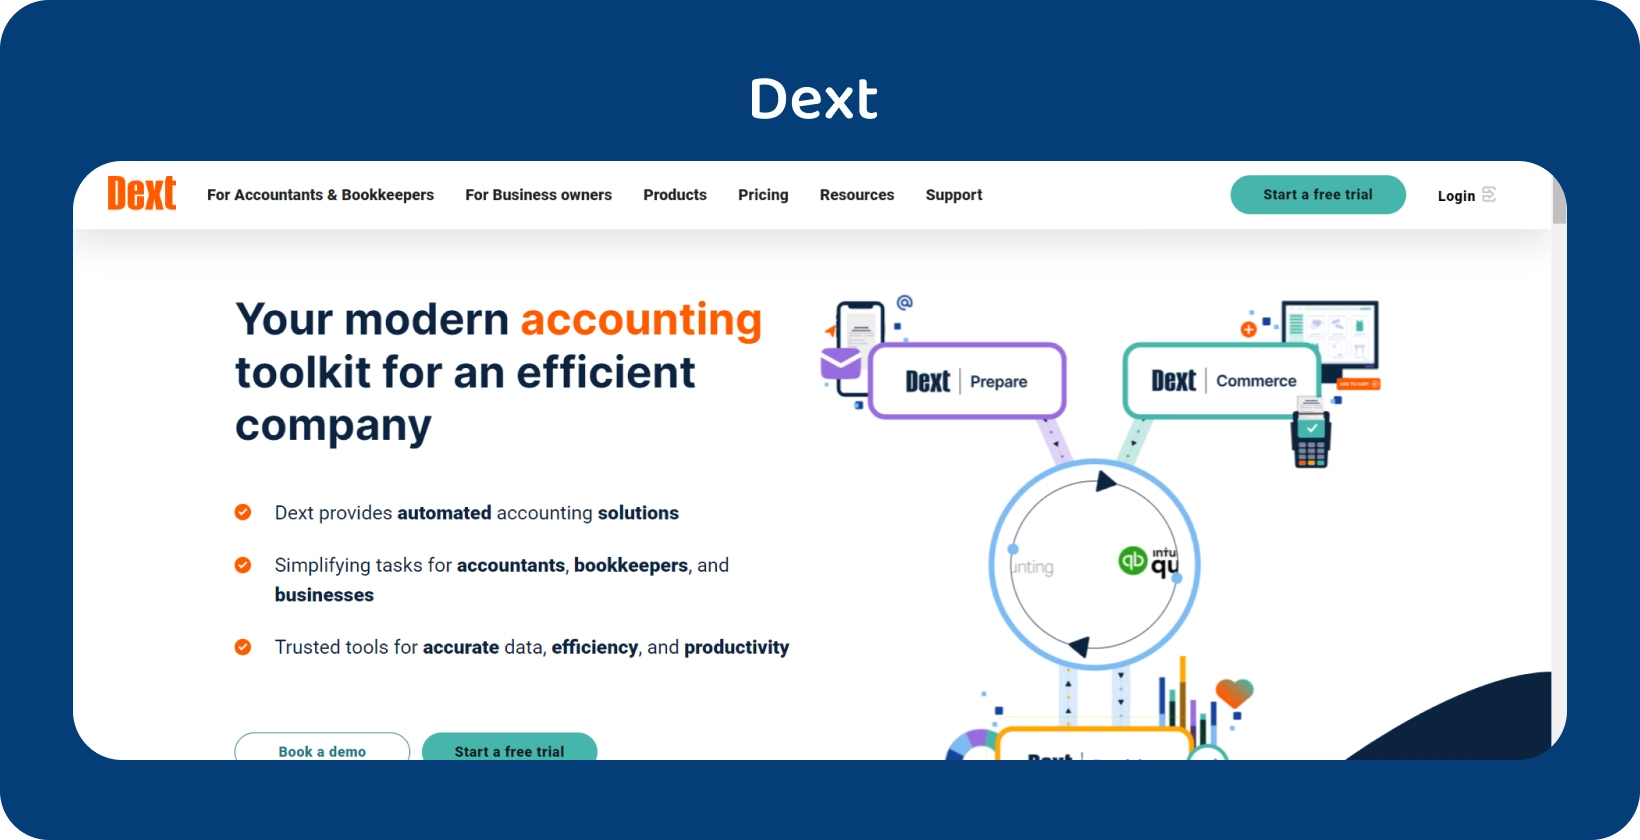 تسلط واجهة مجموعة أدوات المحاسبة المتطورة من Dext الضوء على الأتمتة للمحترفين في المحاسبة ومسك الدفاتر.